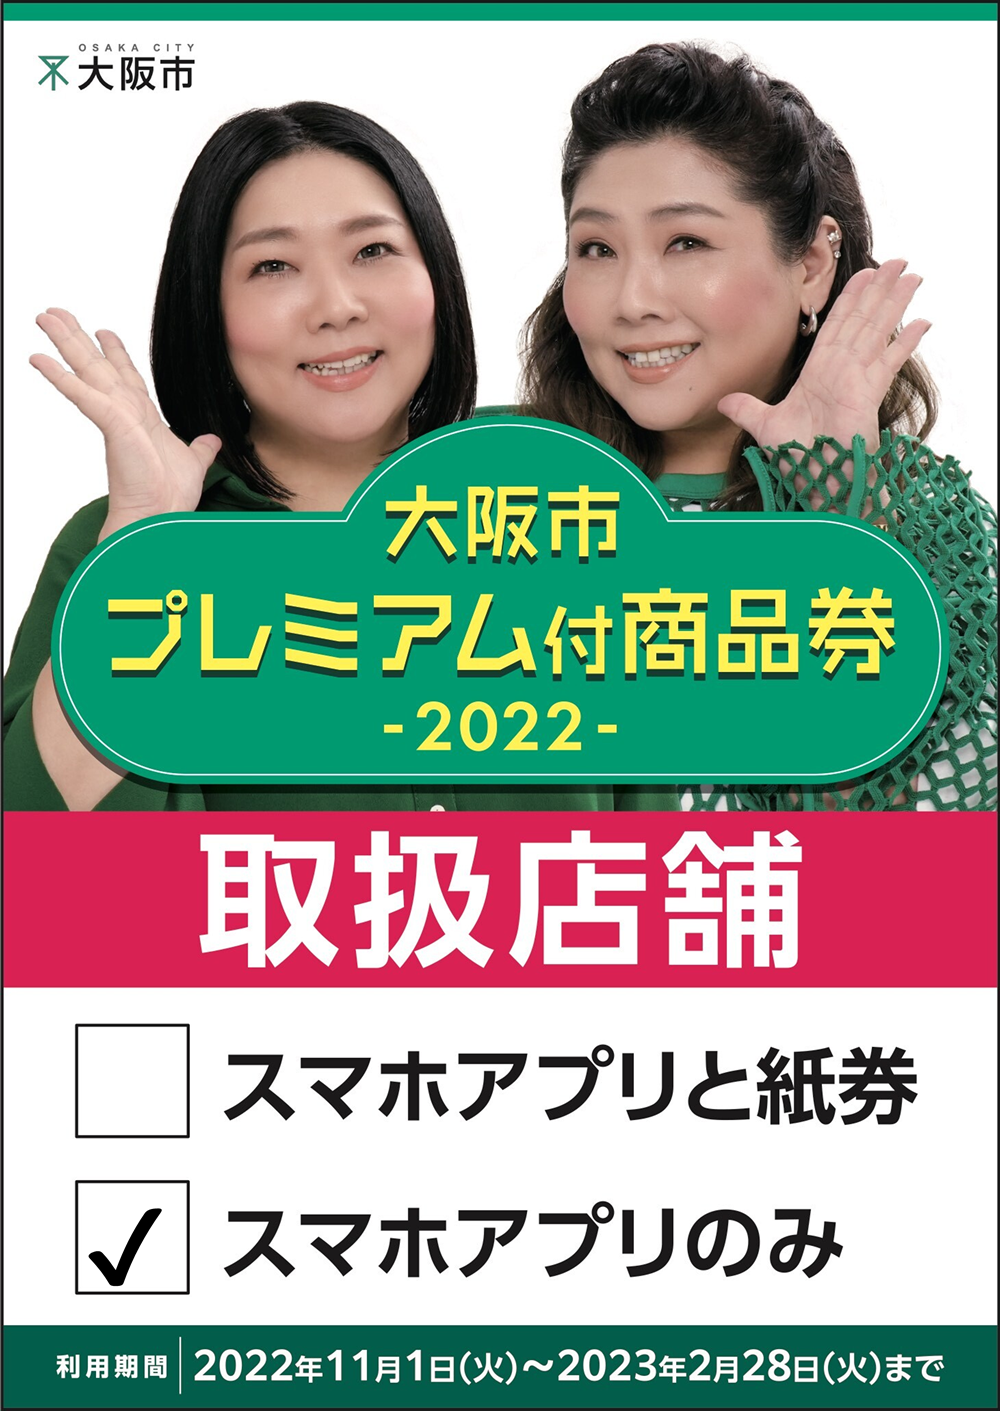 まるとみクリーニングで「大阪市プレミアム付商品券2022」をご利用いただけます。